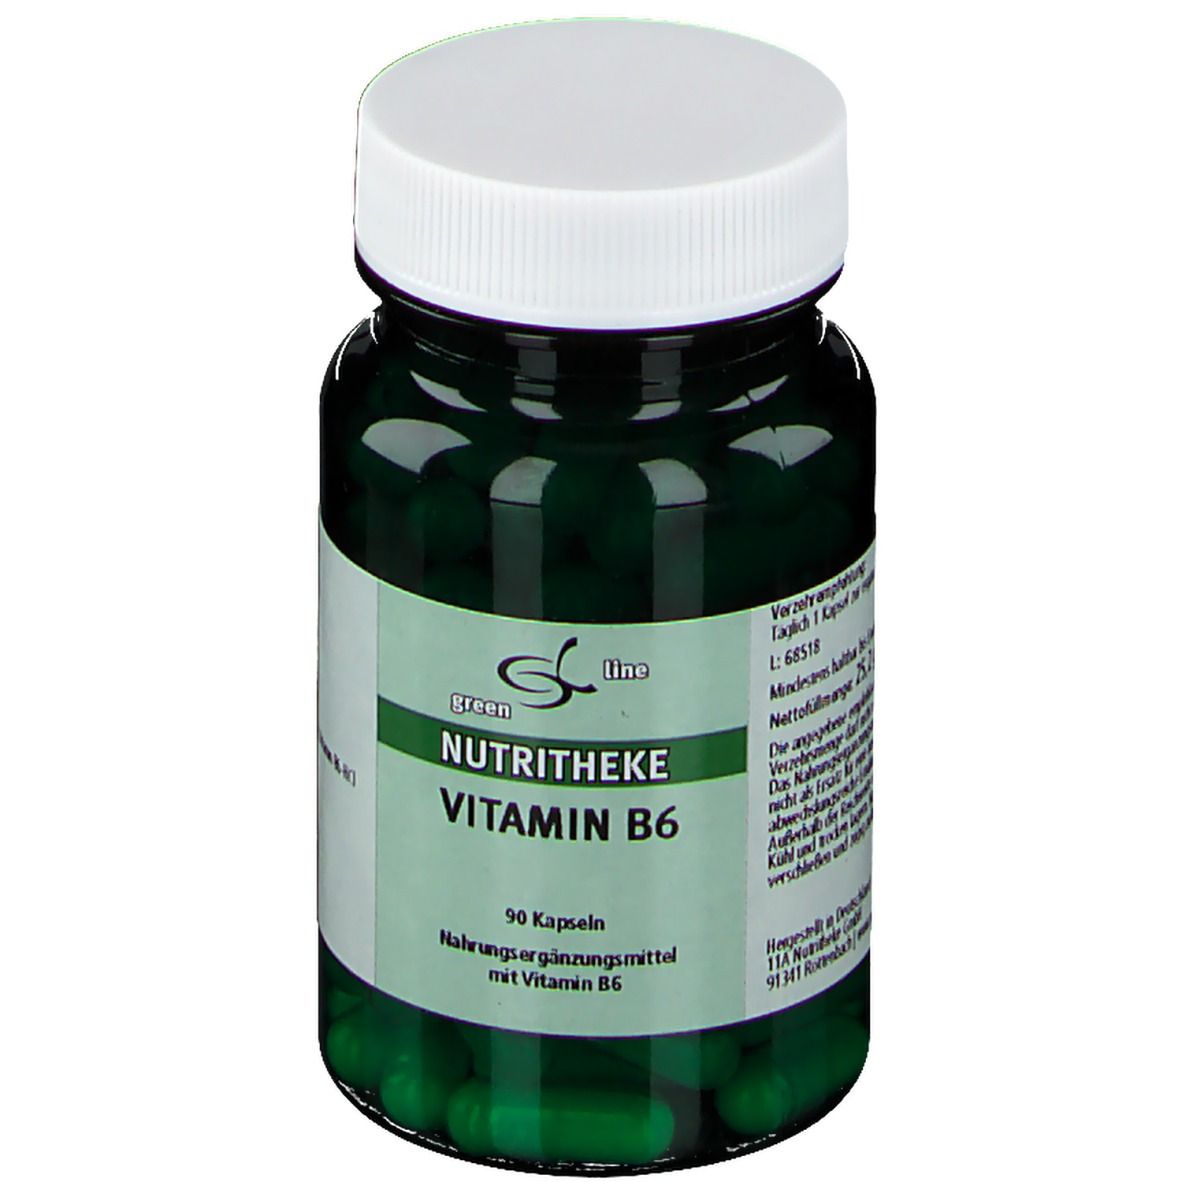 Nutritheke Vitamin B6